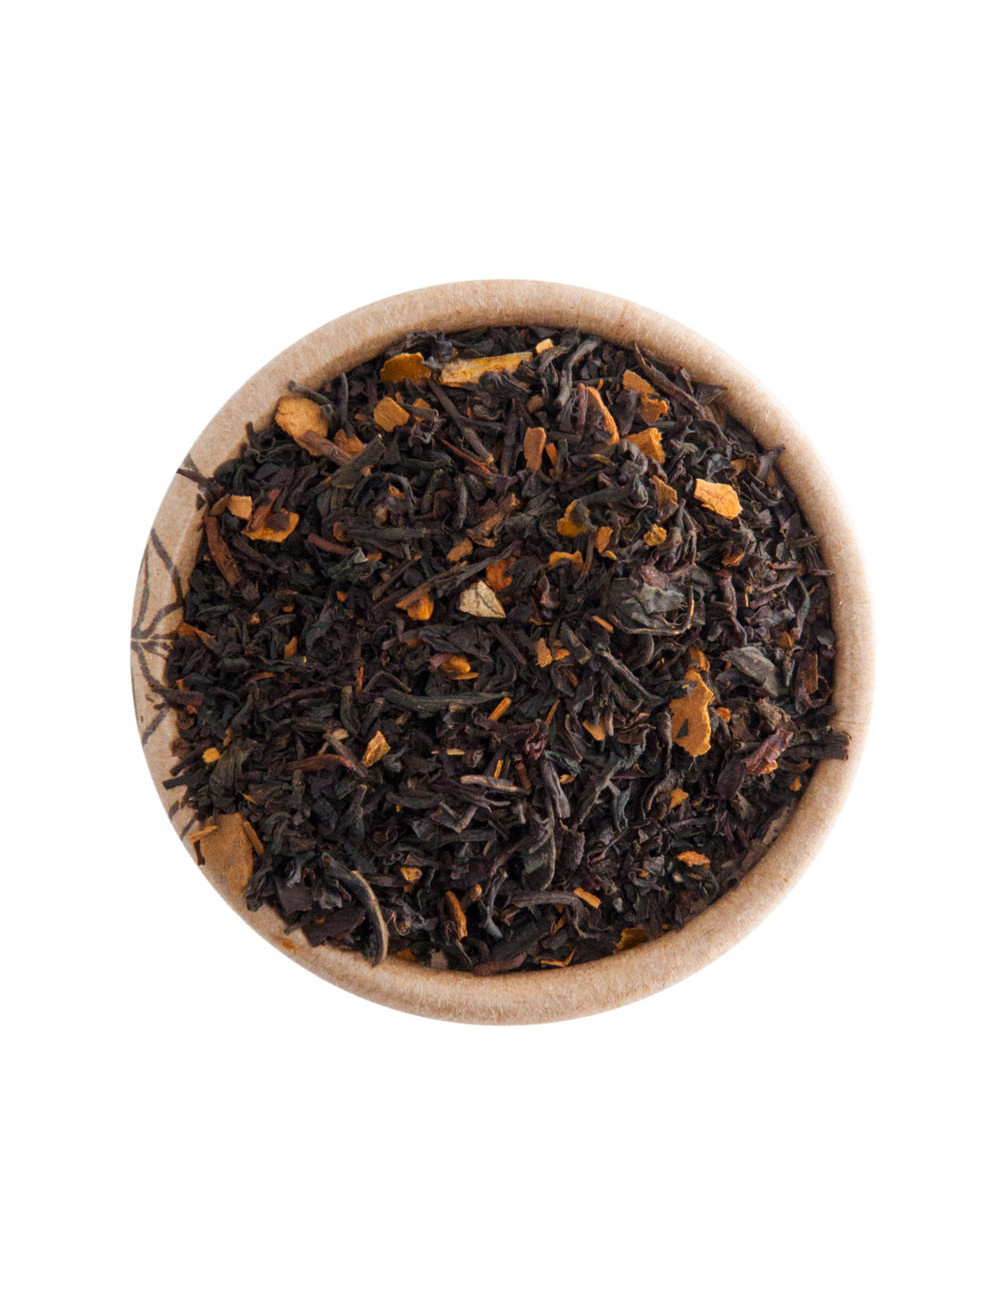 Cannella tè nero aromatizzato - La Pianta del Tè shop online